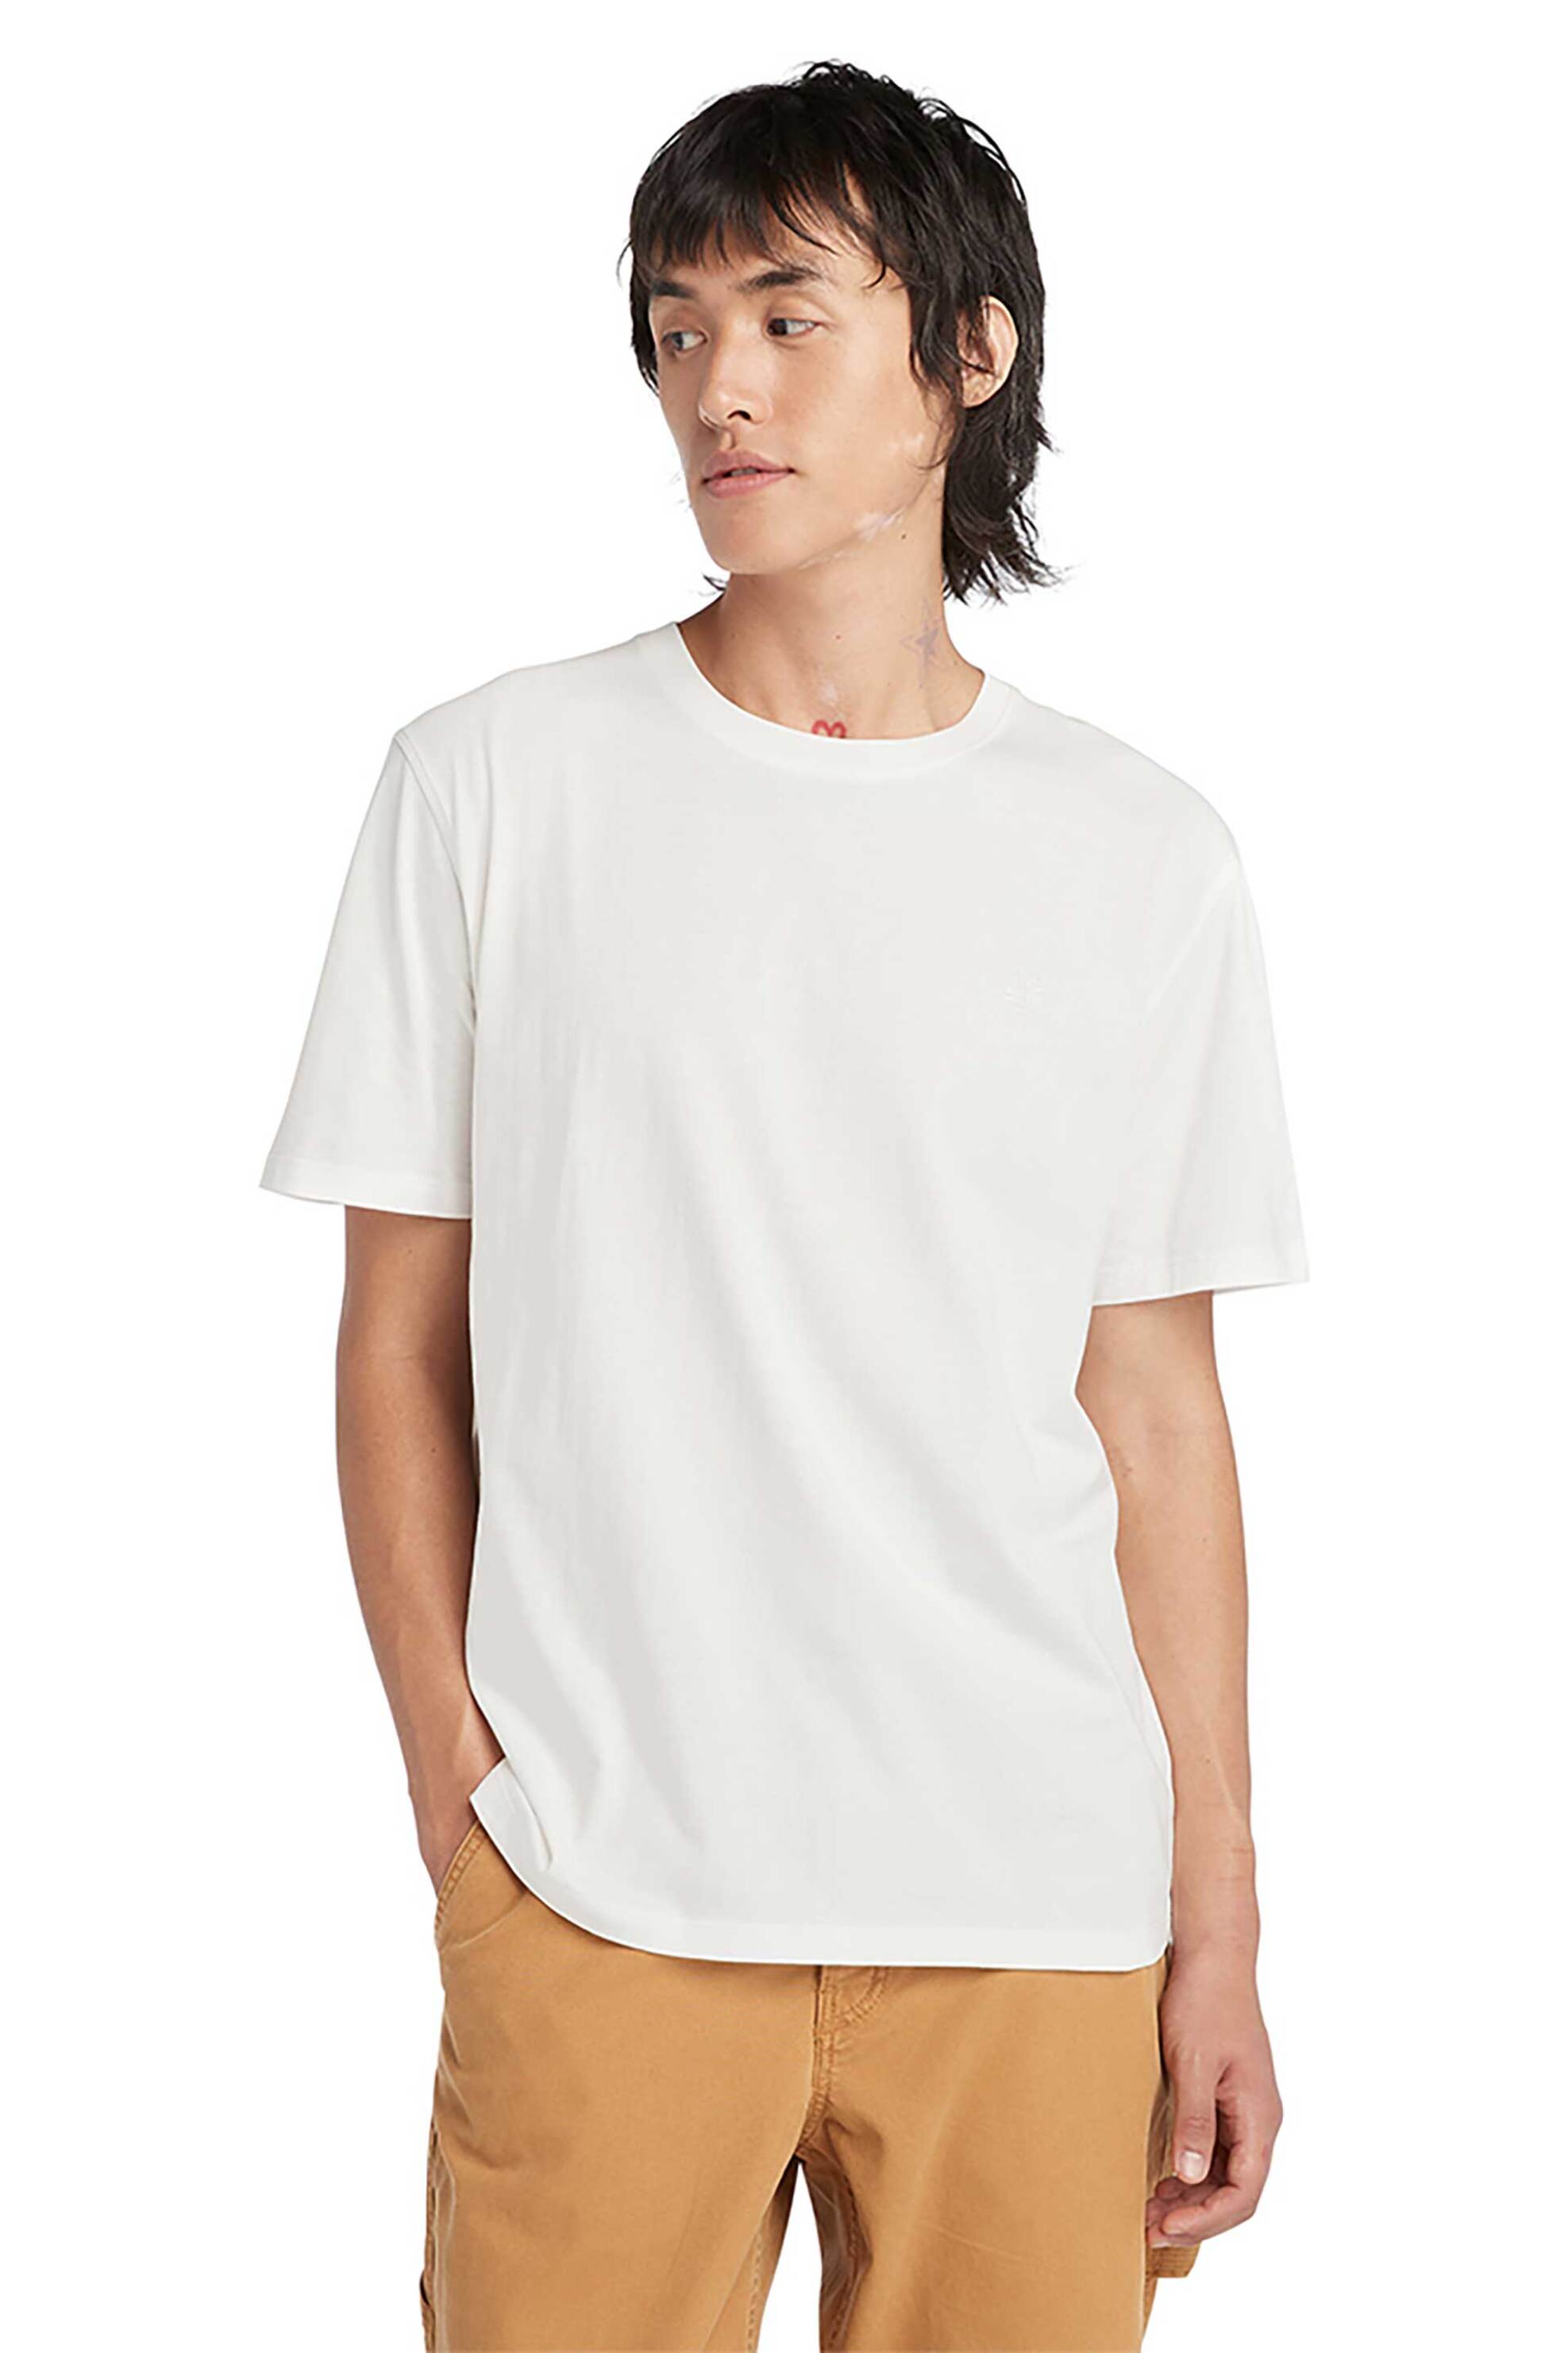 Ανδρική Μόδα > Ανδρικά Ρούχα > Ανδρικές Μπλούζες > Ανδρικά T-Shirts Timberland ανδρικό T-shirt Authentic Fit "Dunstan Garment Dye" - TB0A5YAYCR31 Λευκό